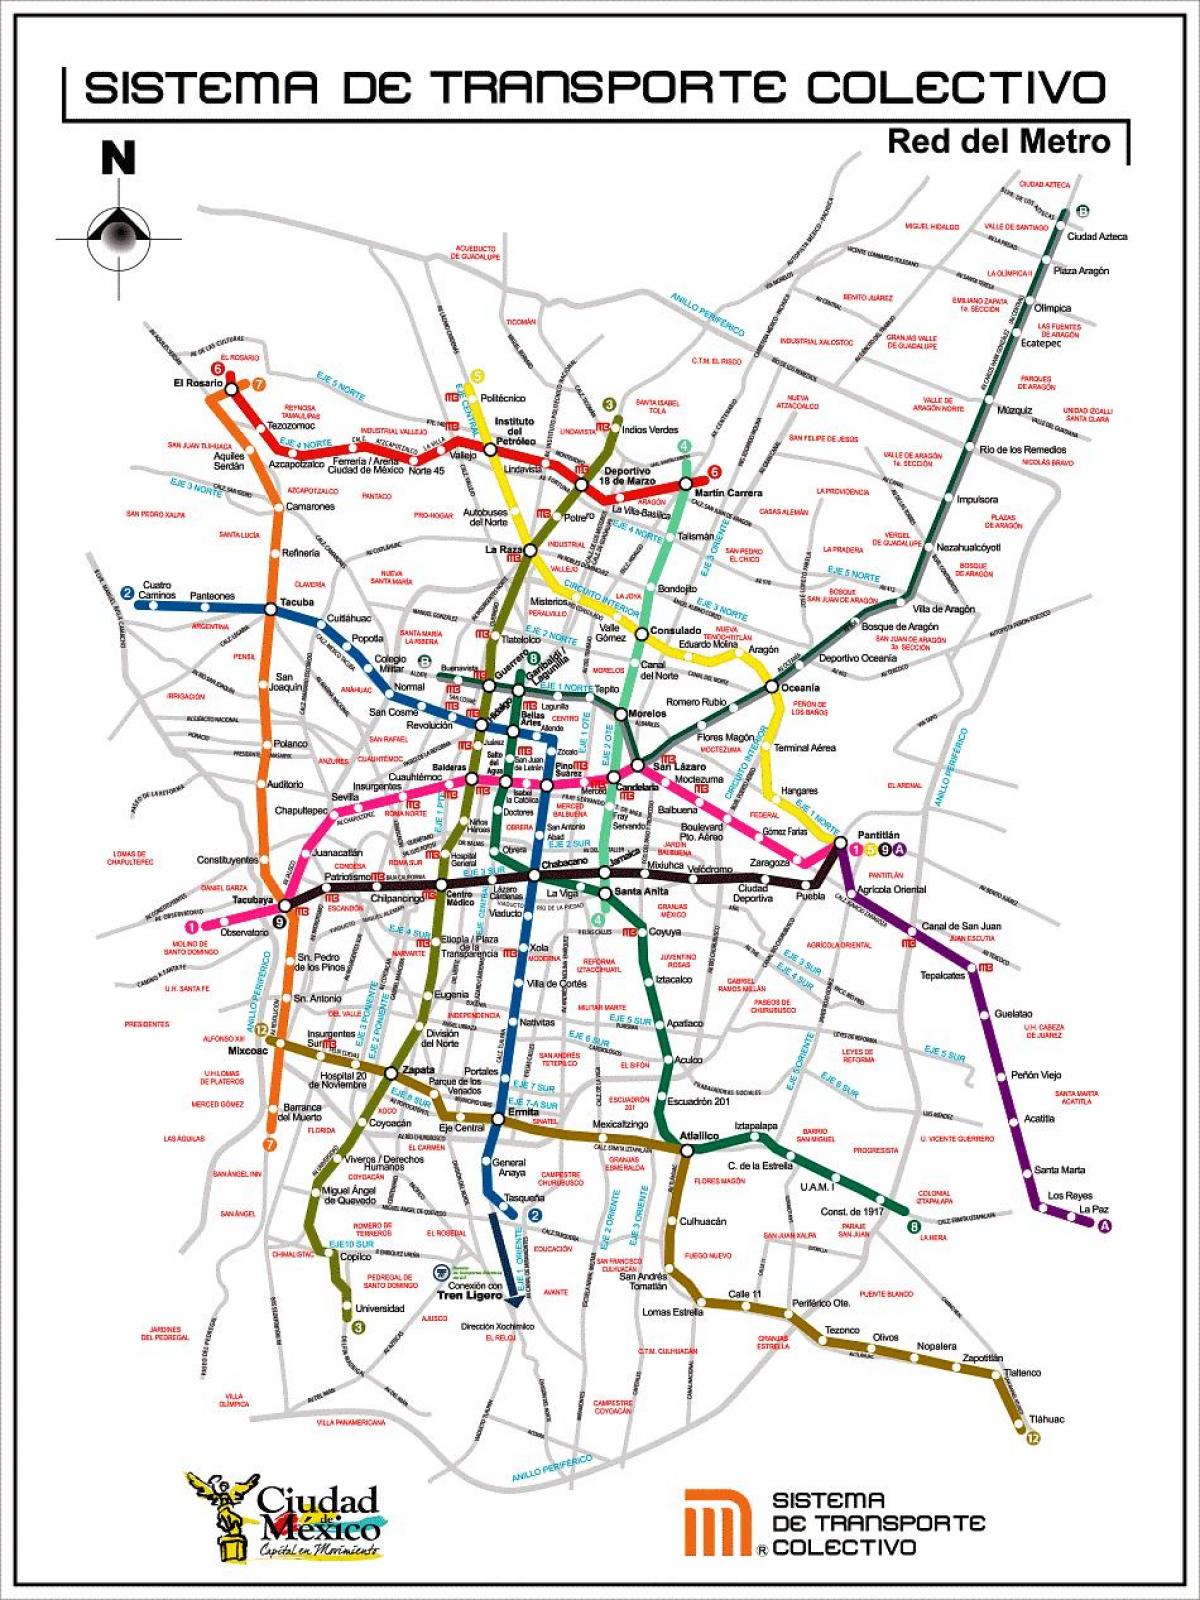 نقشه شهر مکزیک حمل و نقل